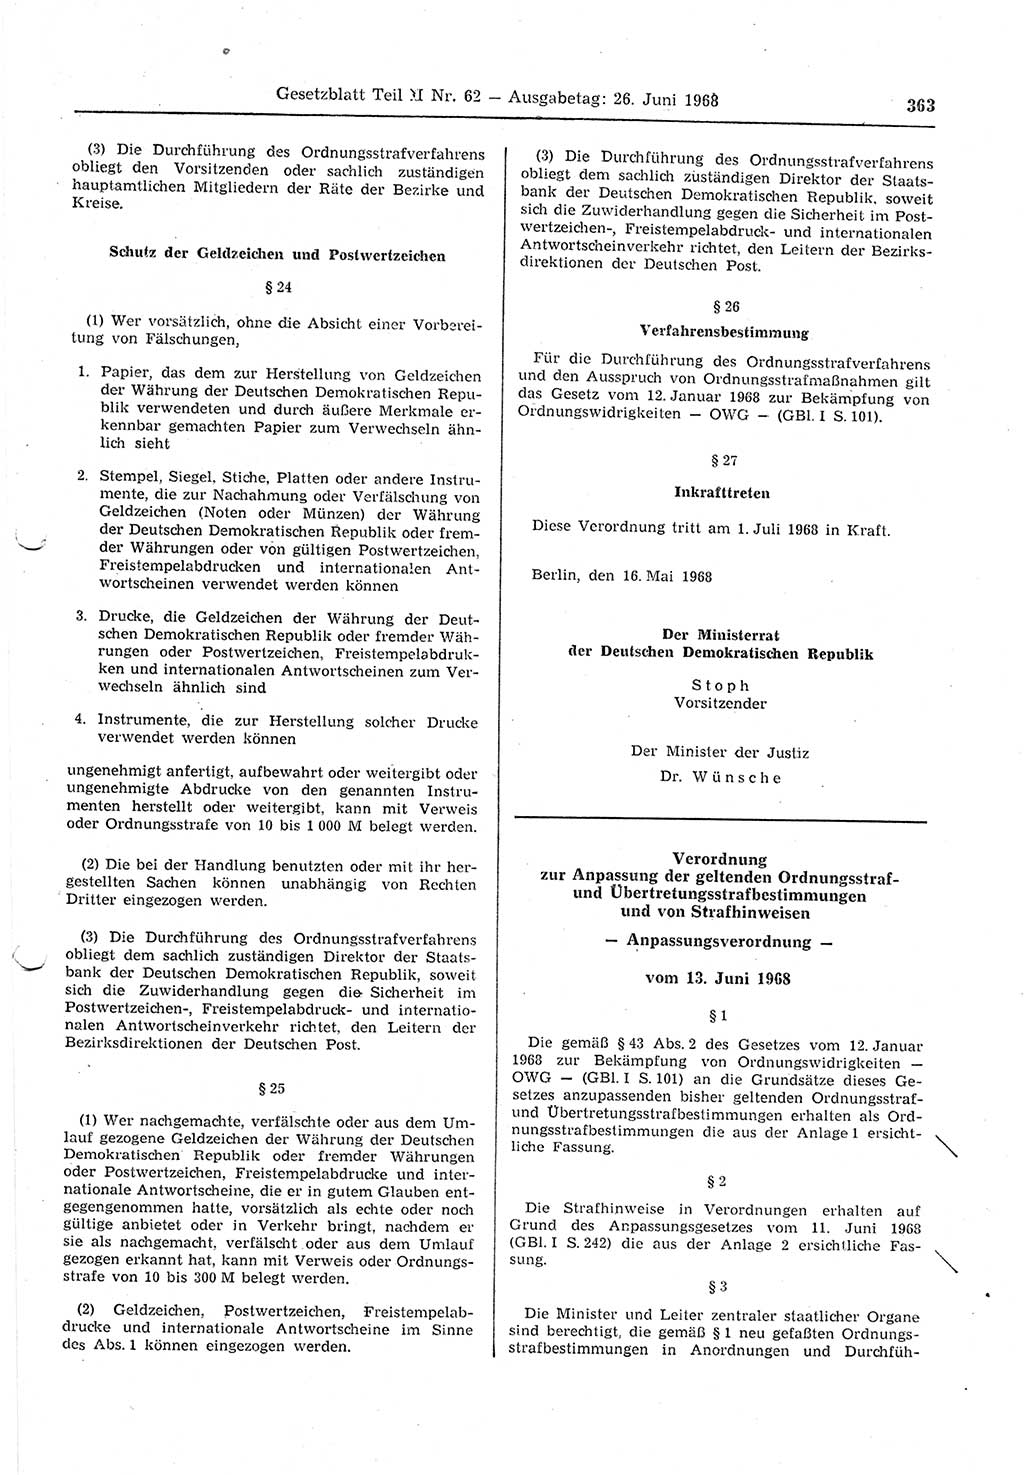 Gesetzblatt (GBl.) der Deutschen Demokratischen Republik (DDR) Teil ⅠⅠ 1968, Seite 363 (GBl. DDR ⅠⅠ 1968, S. 363)